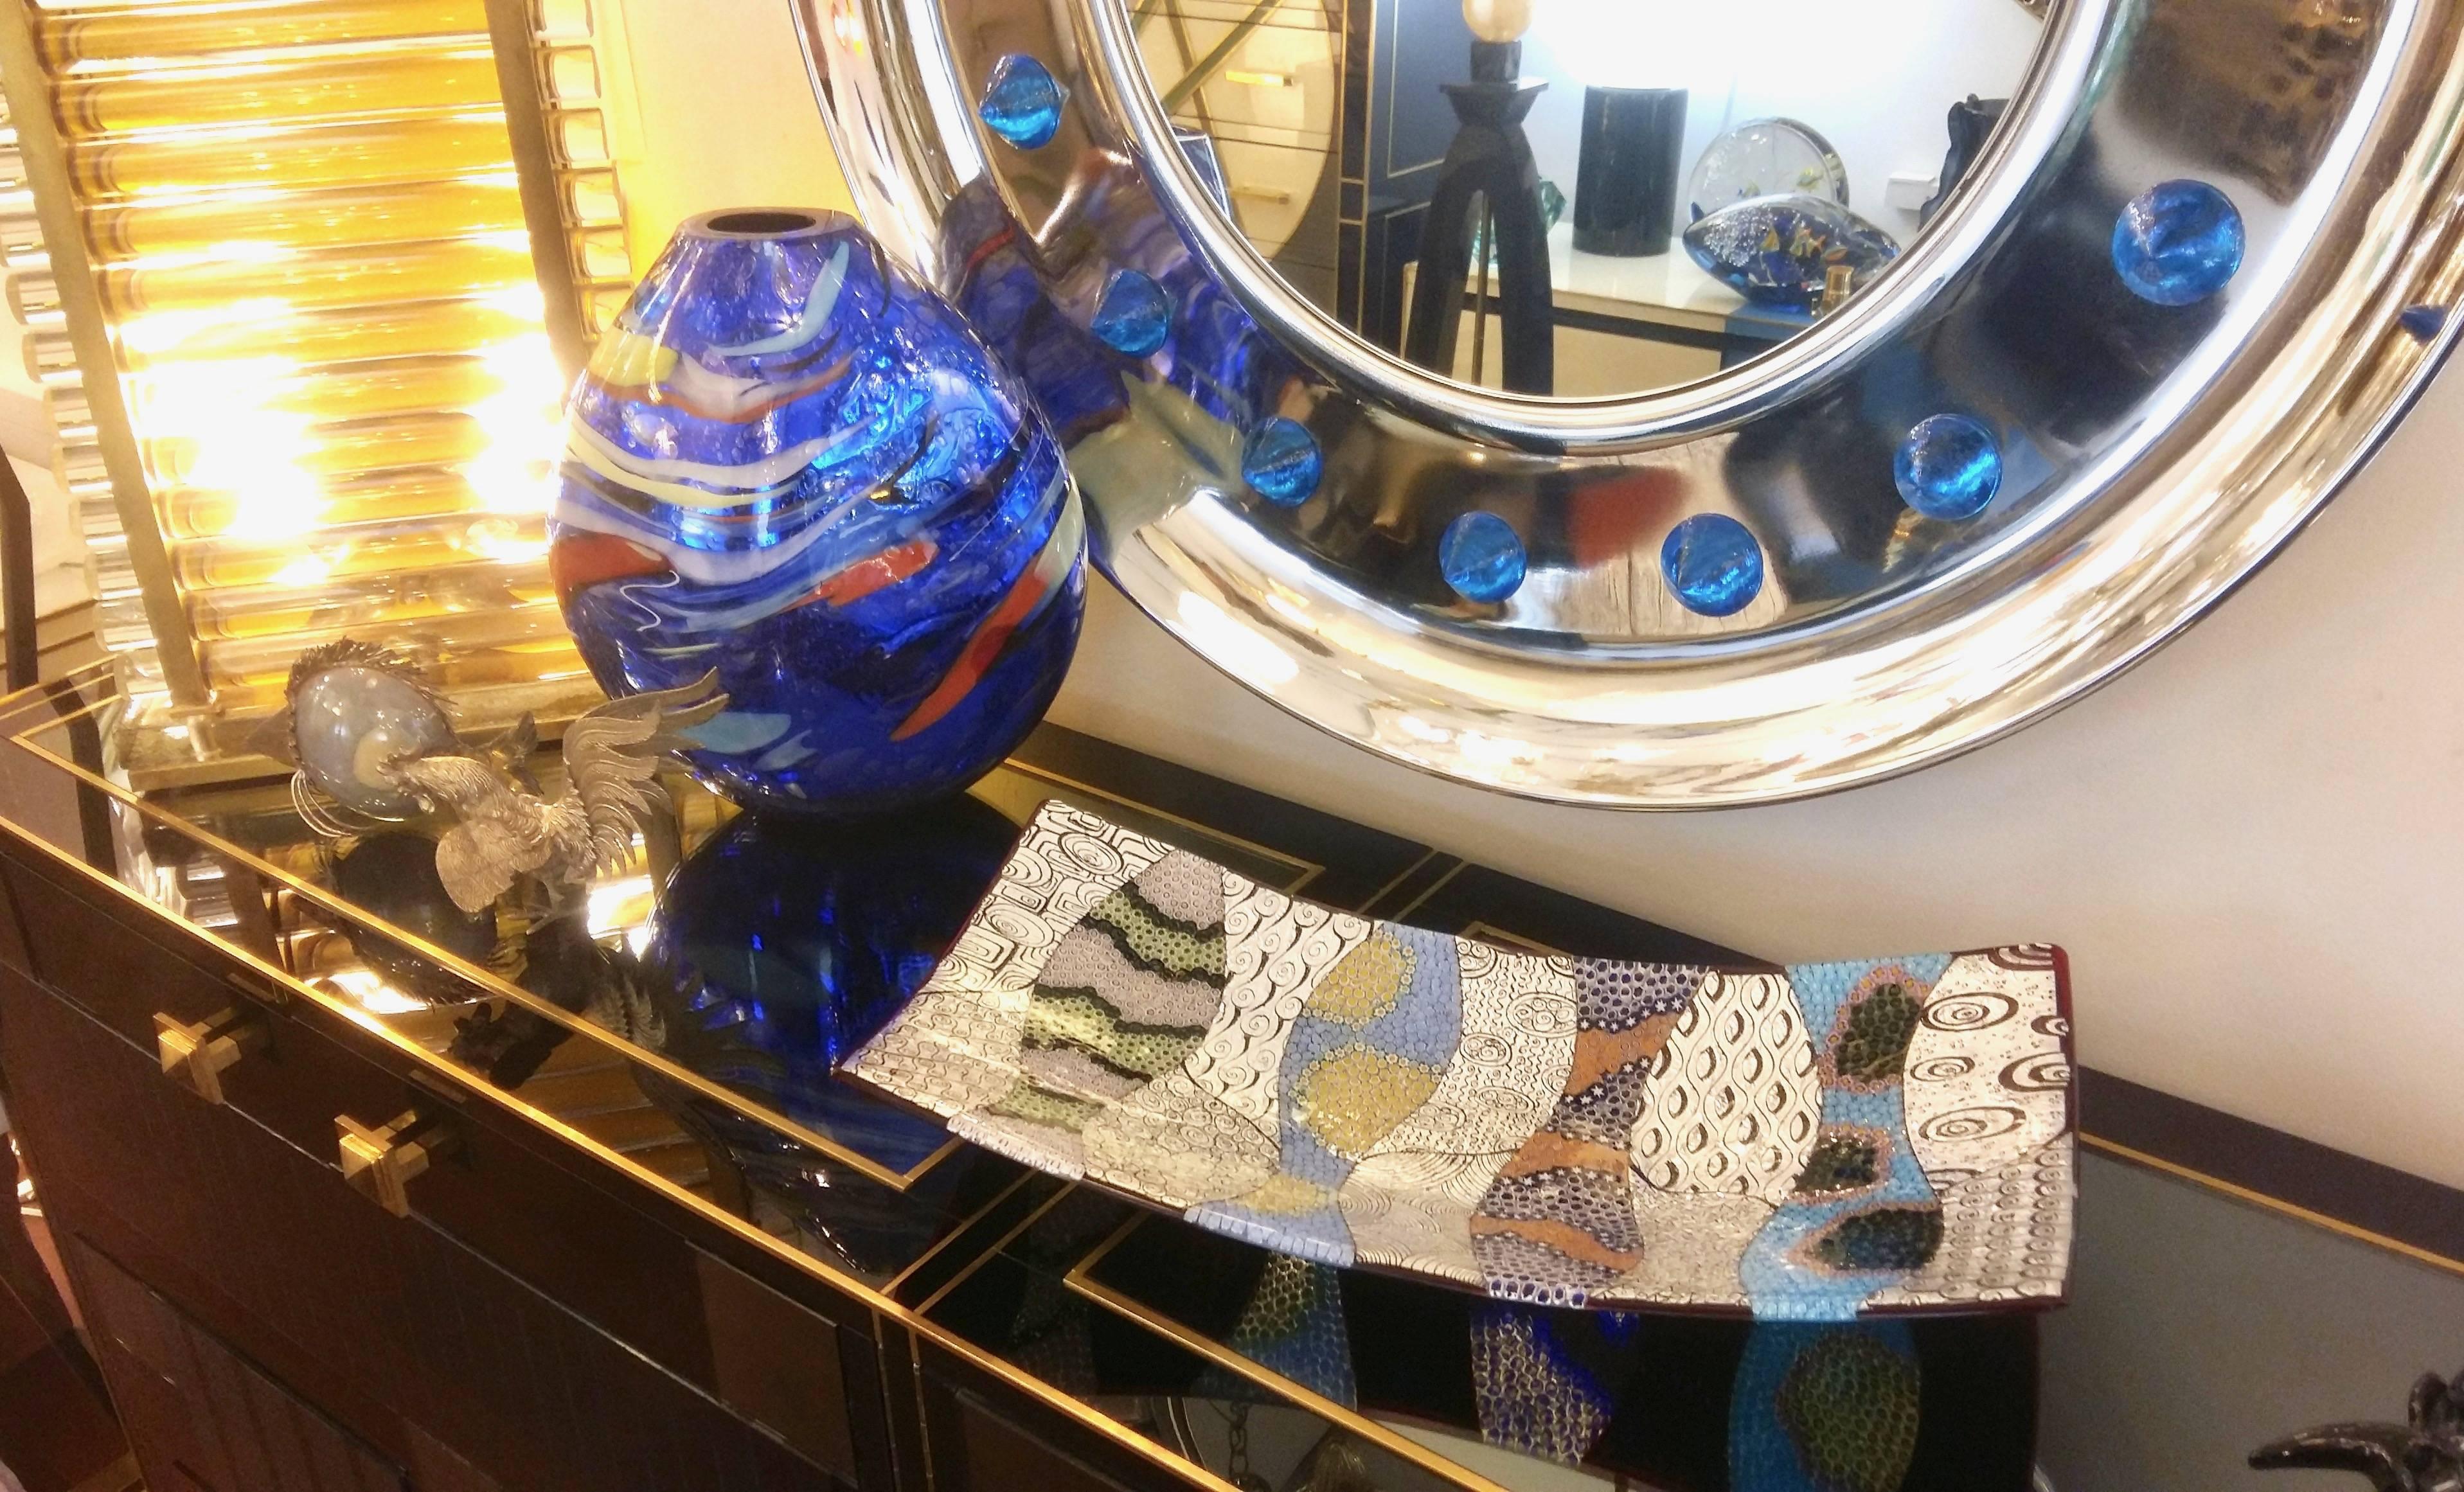 Zeitgenössisches modernes Murano Kunstglas Mosaik Tafelaufsatz: Hochwertige Ausführung in der raffinierten Technik der Glasverschmelzung mit einem durchsichtigen Mosaik aus Muranoglas (jedes kleine farbige Stück wird einzeln von Hand positioniert),